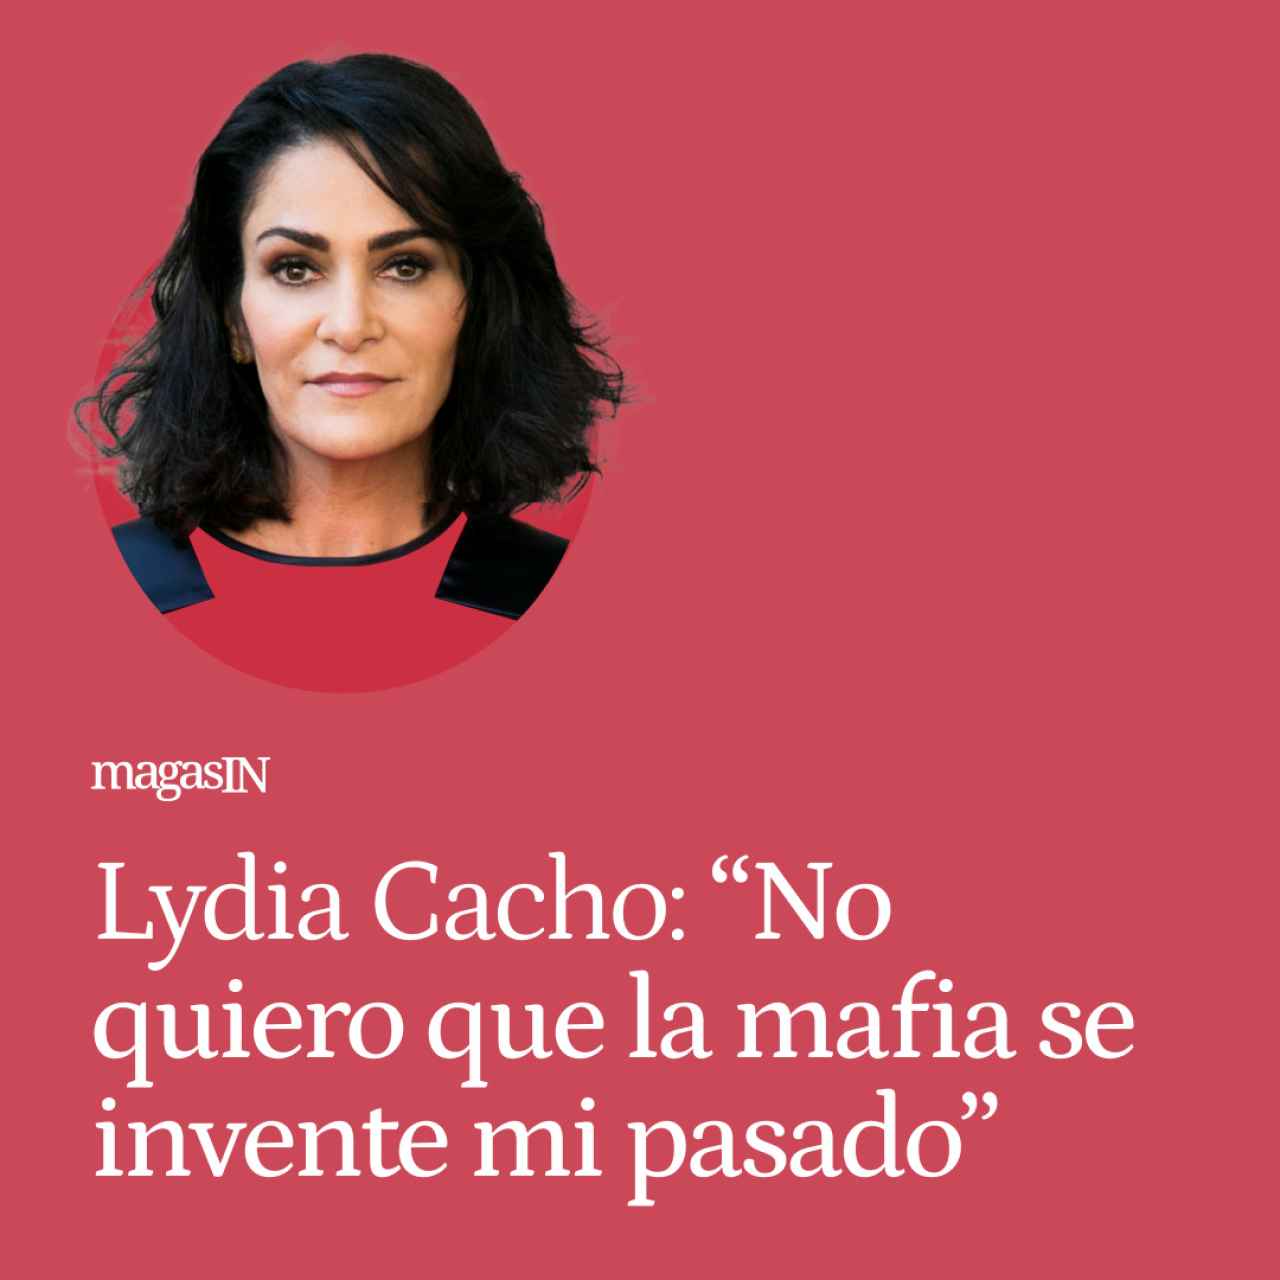 Lydia Cacho se rebela contra la incertidumbre: “No quiero que la mafia se invente mi pasado”